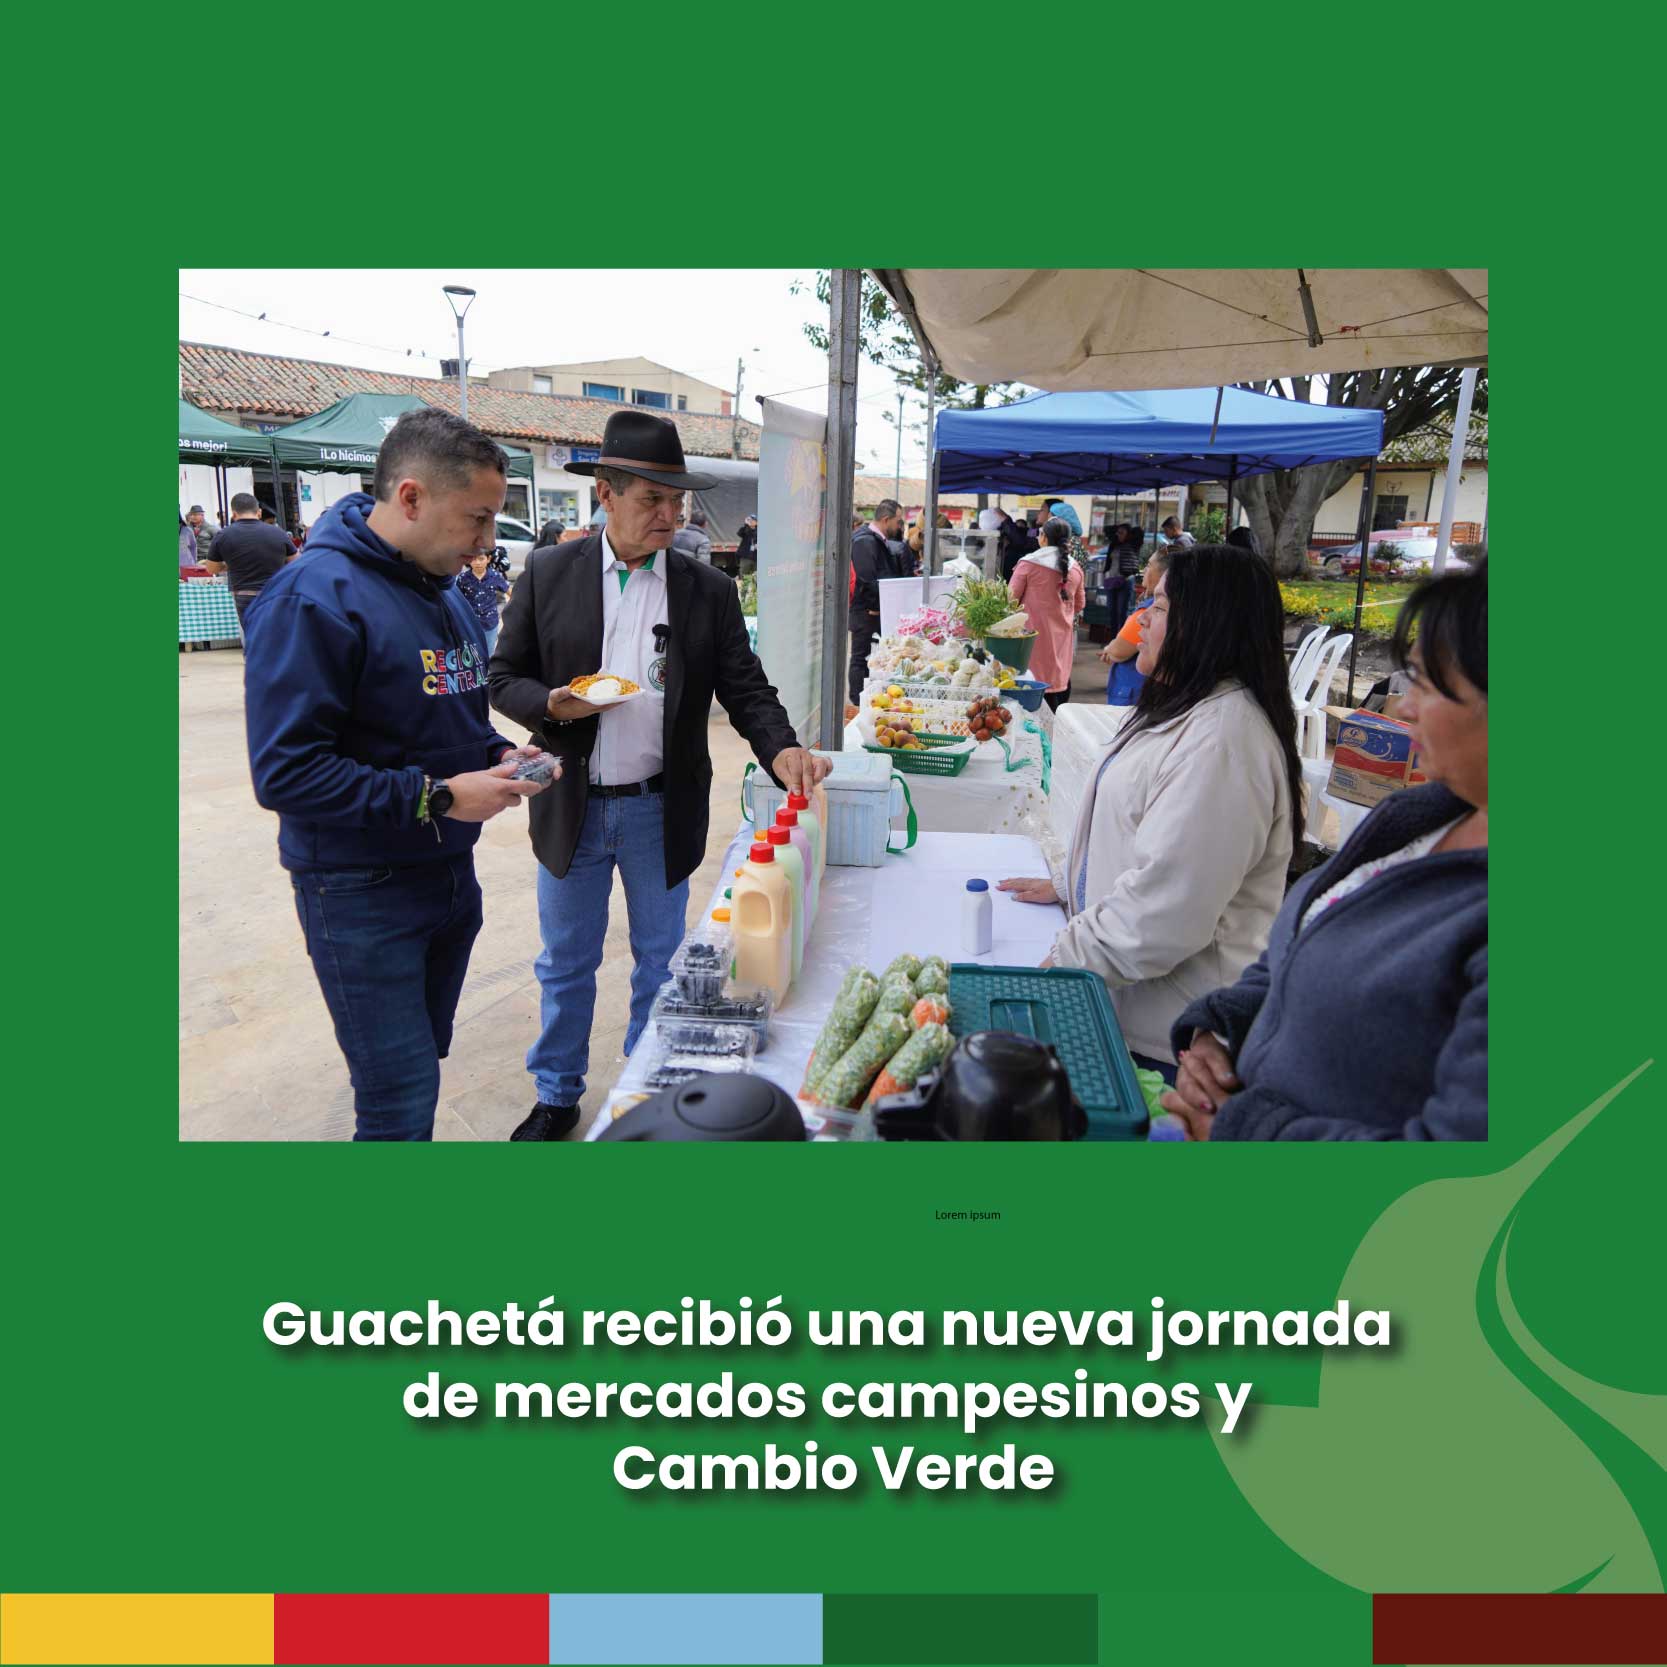 Guachetá recibió una nueva jornada de mercados campesinos y Cambio Verde